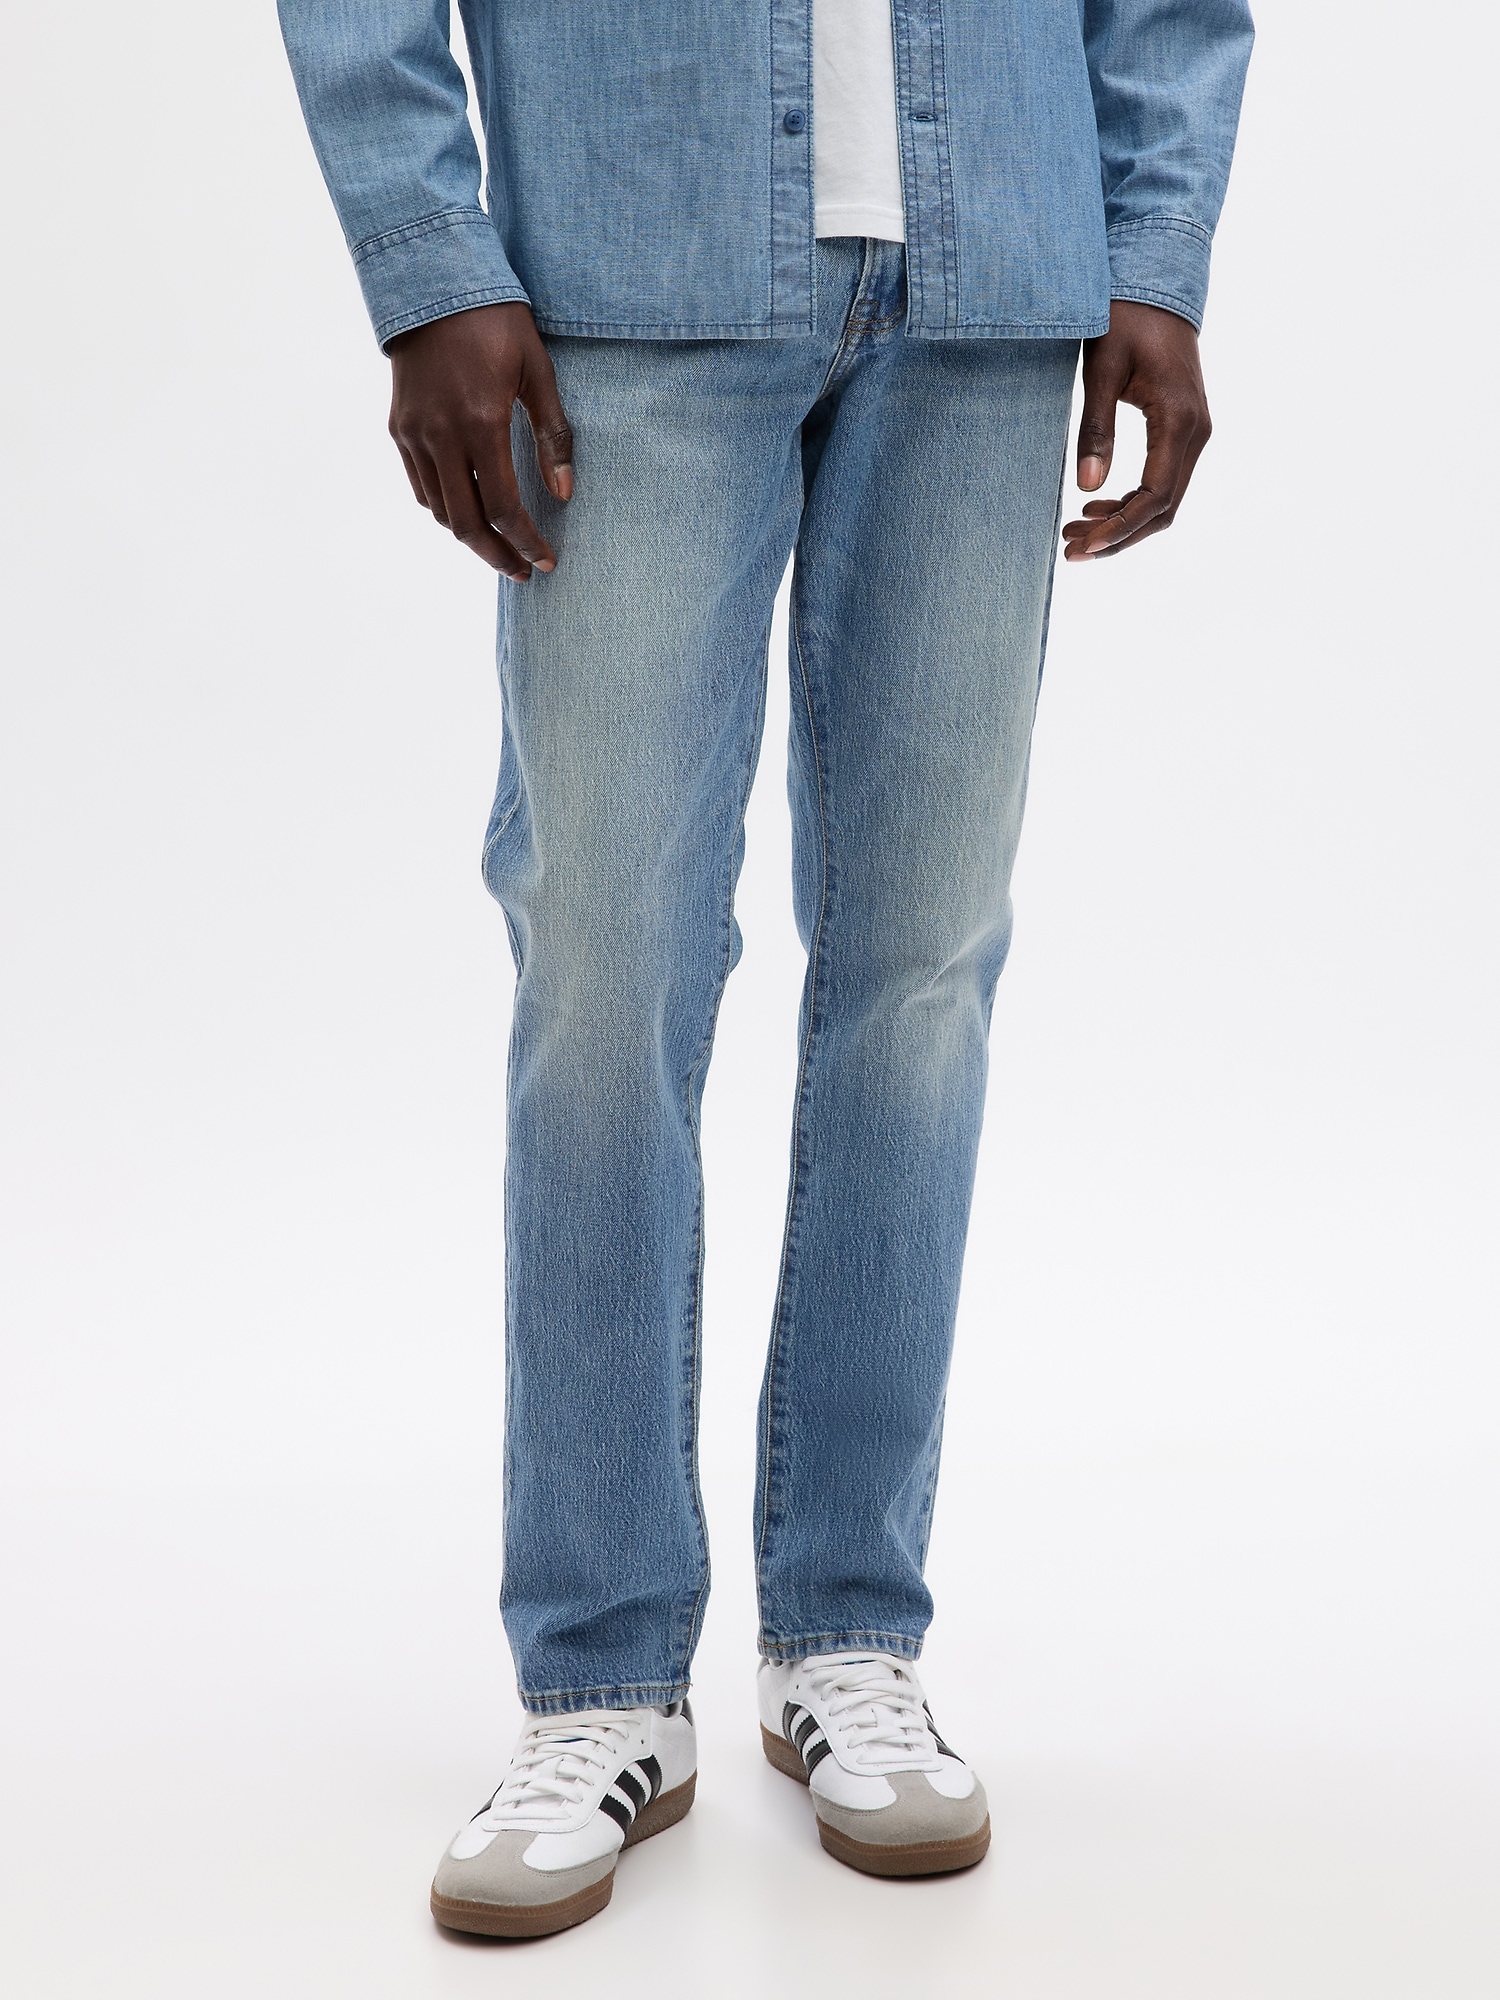 GAP Mens Soft Wear Slim Fit Jeans, Light Wash, 34W x 34L US at